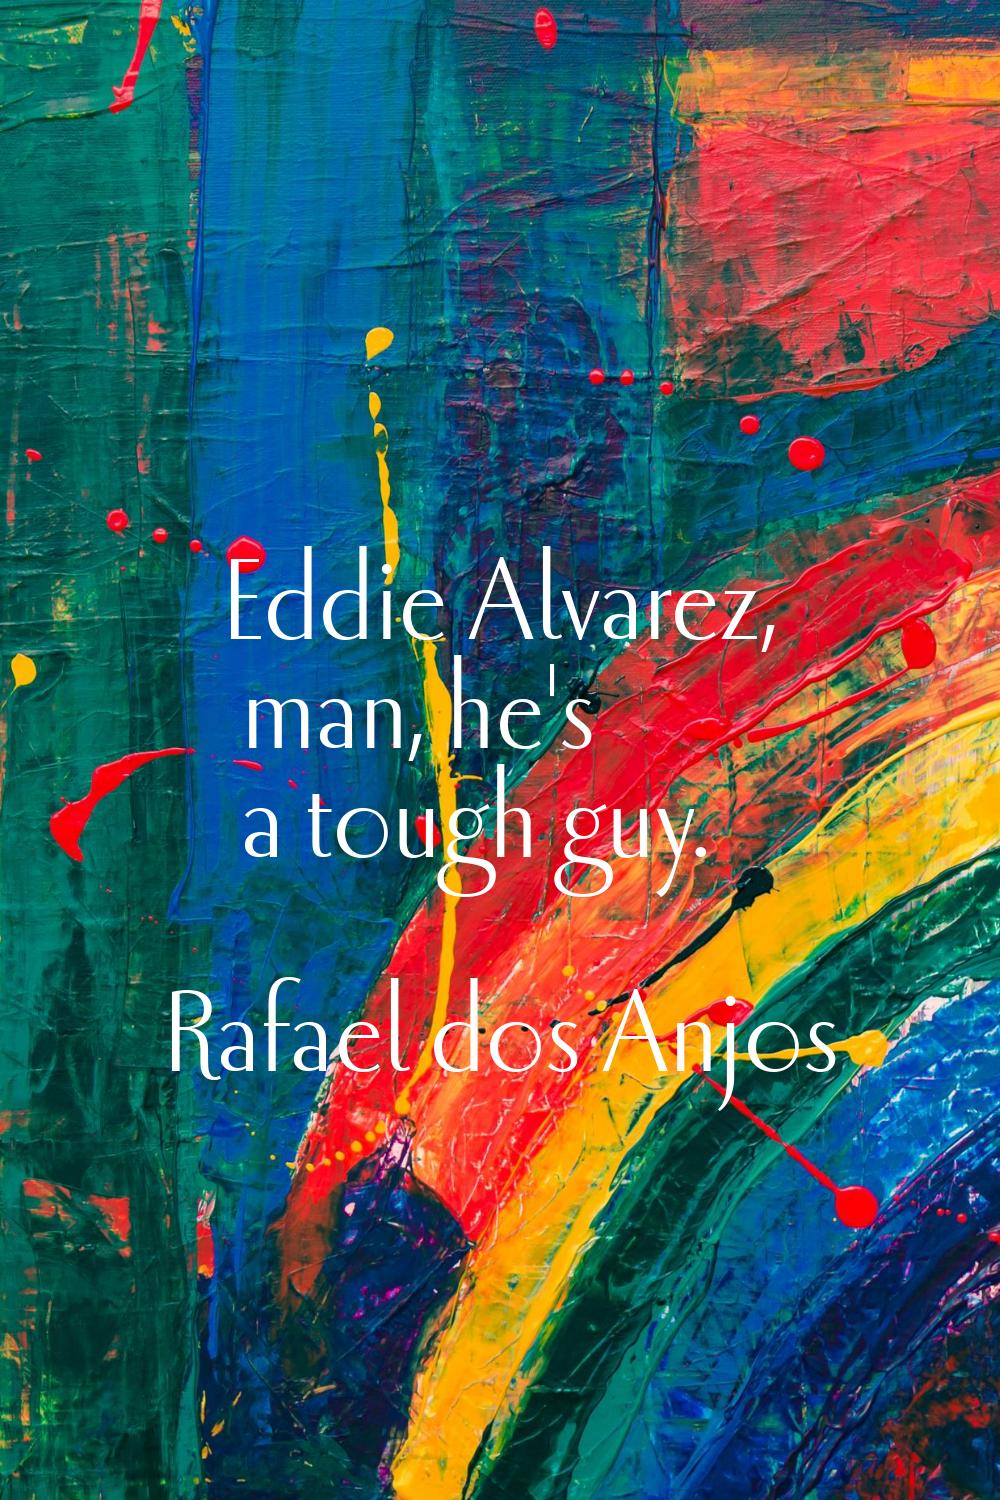 Eddie Alvarez, man, he's a tough guy.